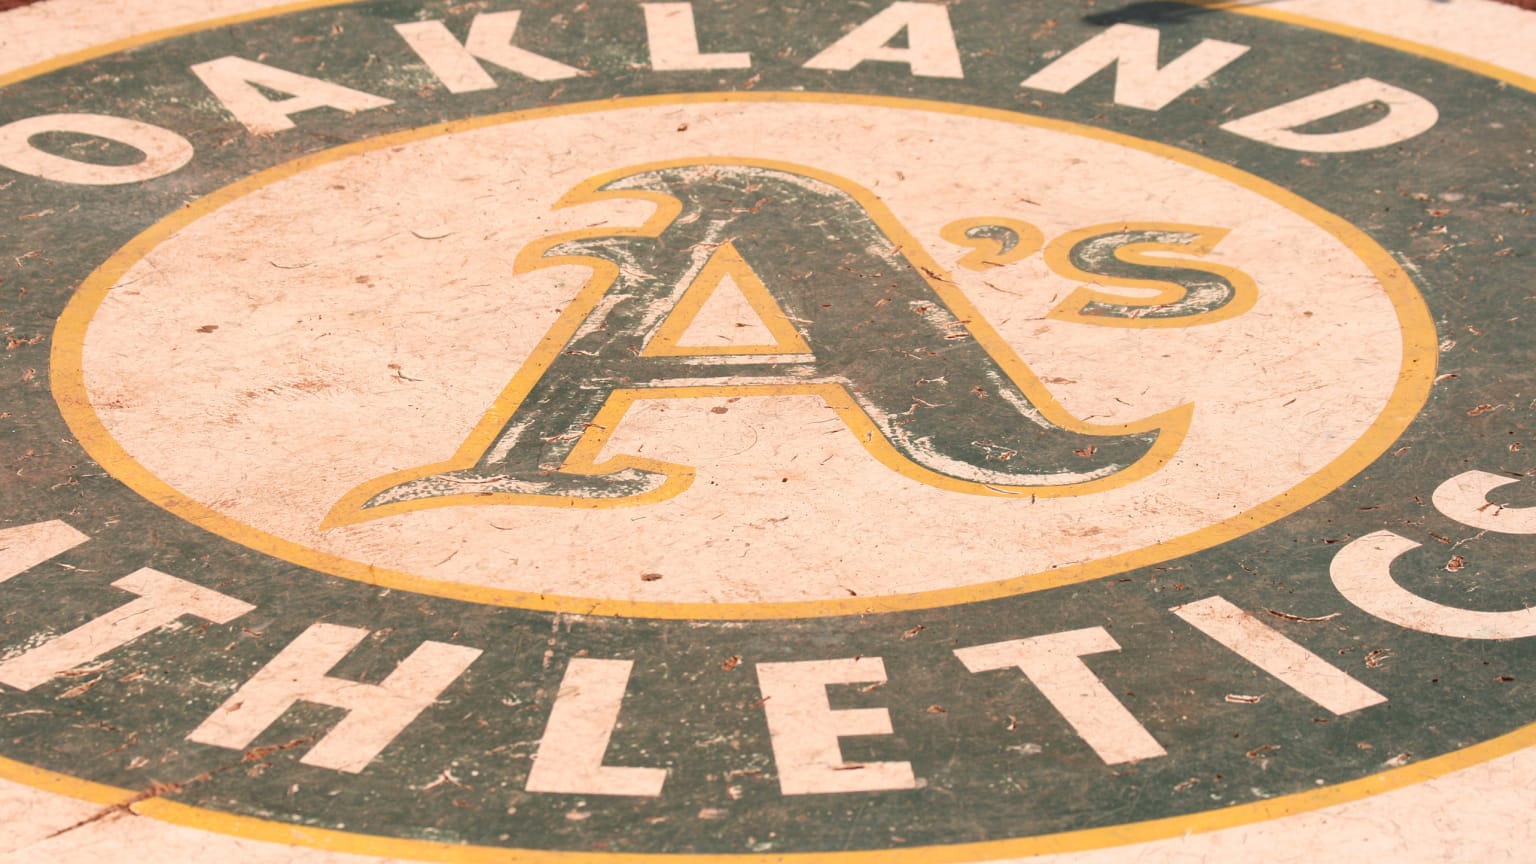 Official Oakland Athletics Oakland Coliseum Major League Baseball